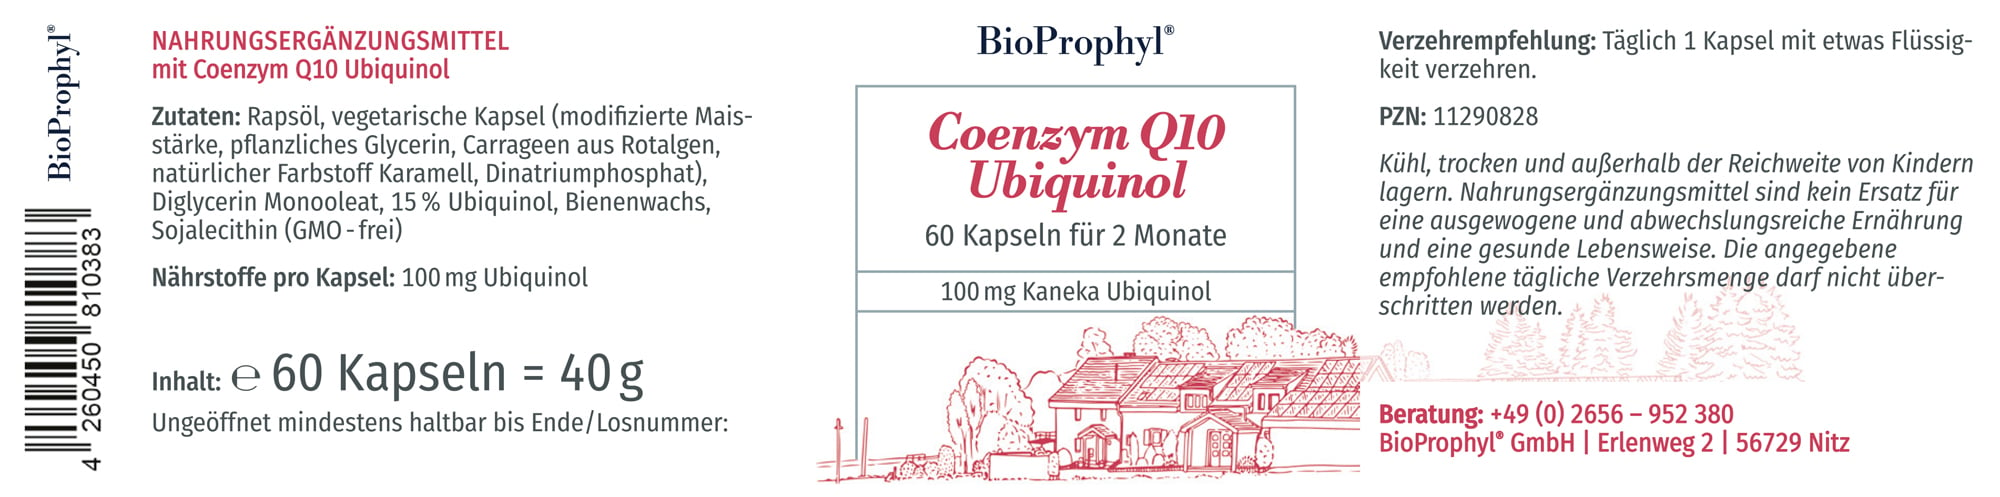 Produktetikett von Coenzym Q10 Ubiquinol